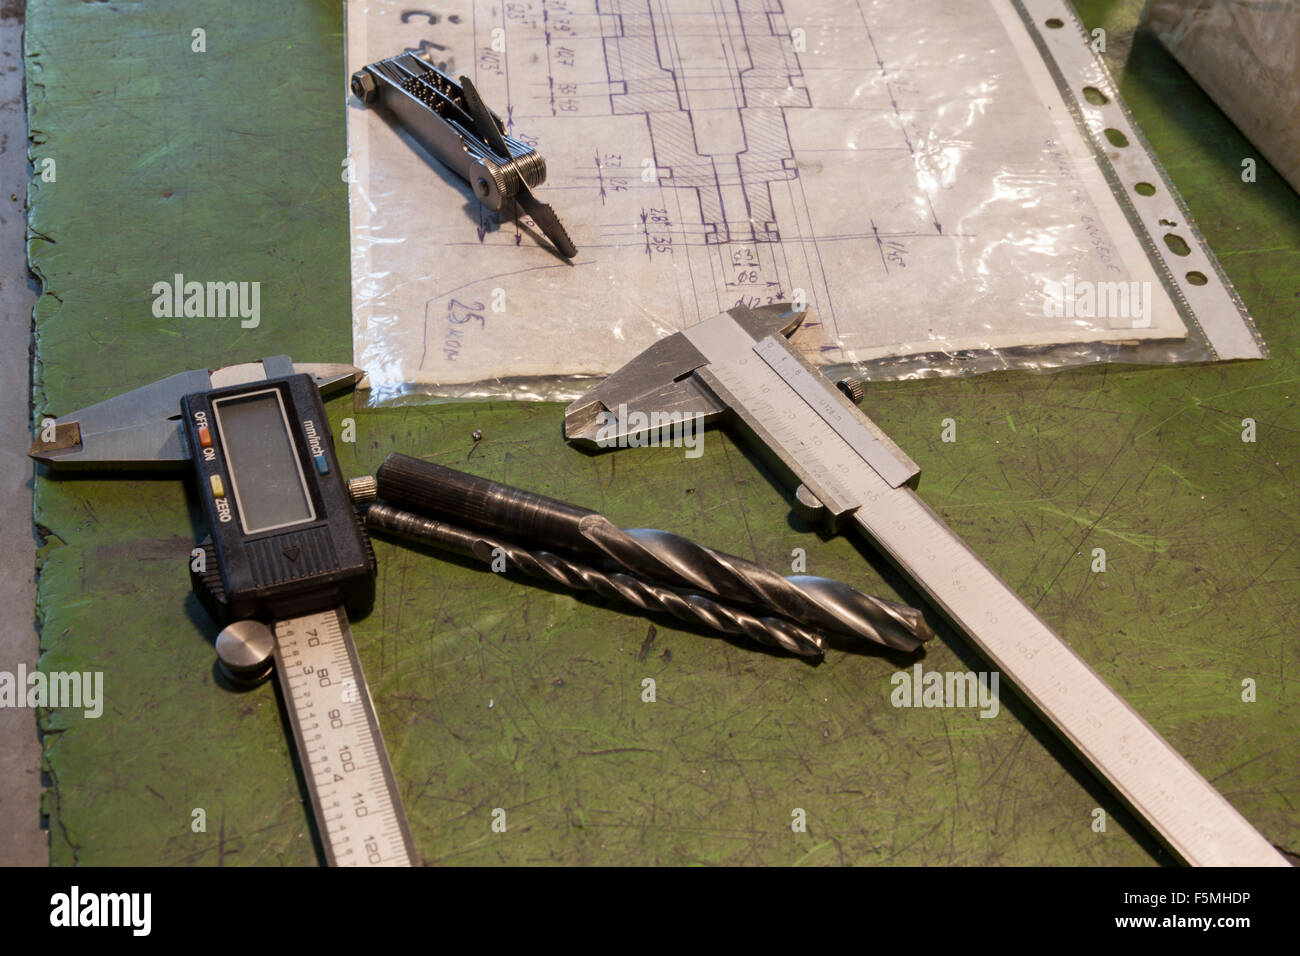 Instrumentos de medición y simulacros en la mesa Foto de stock